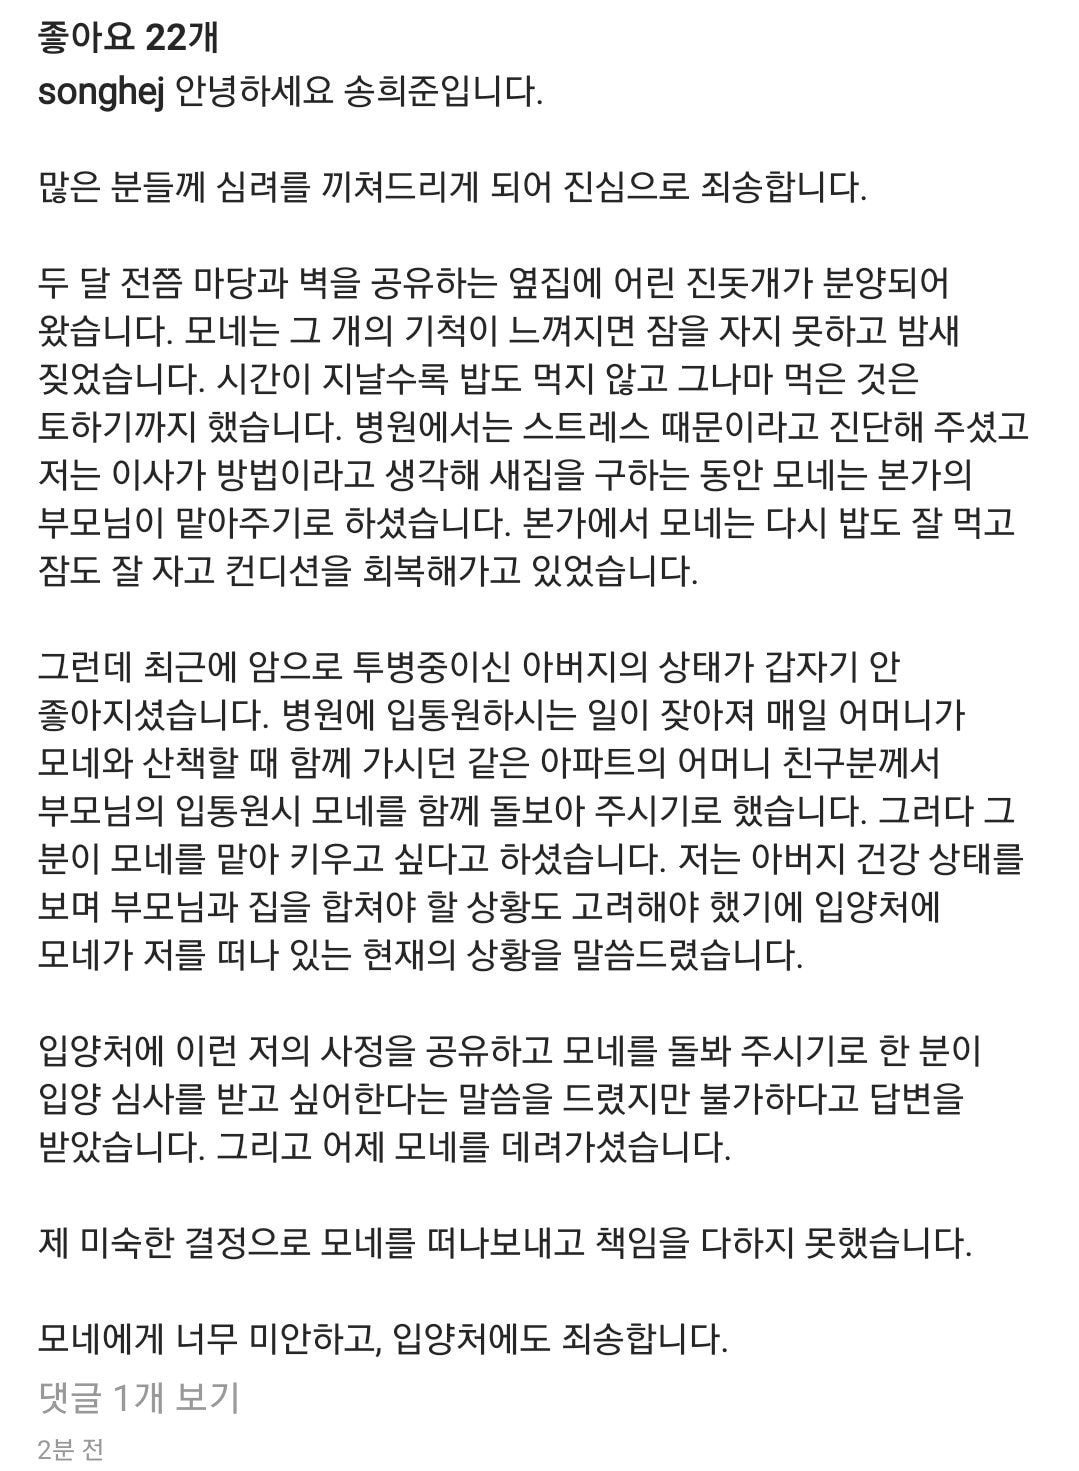 배우 송희준 인별 업데이트 (강아지 파양 해명문)